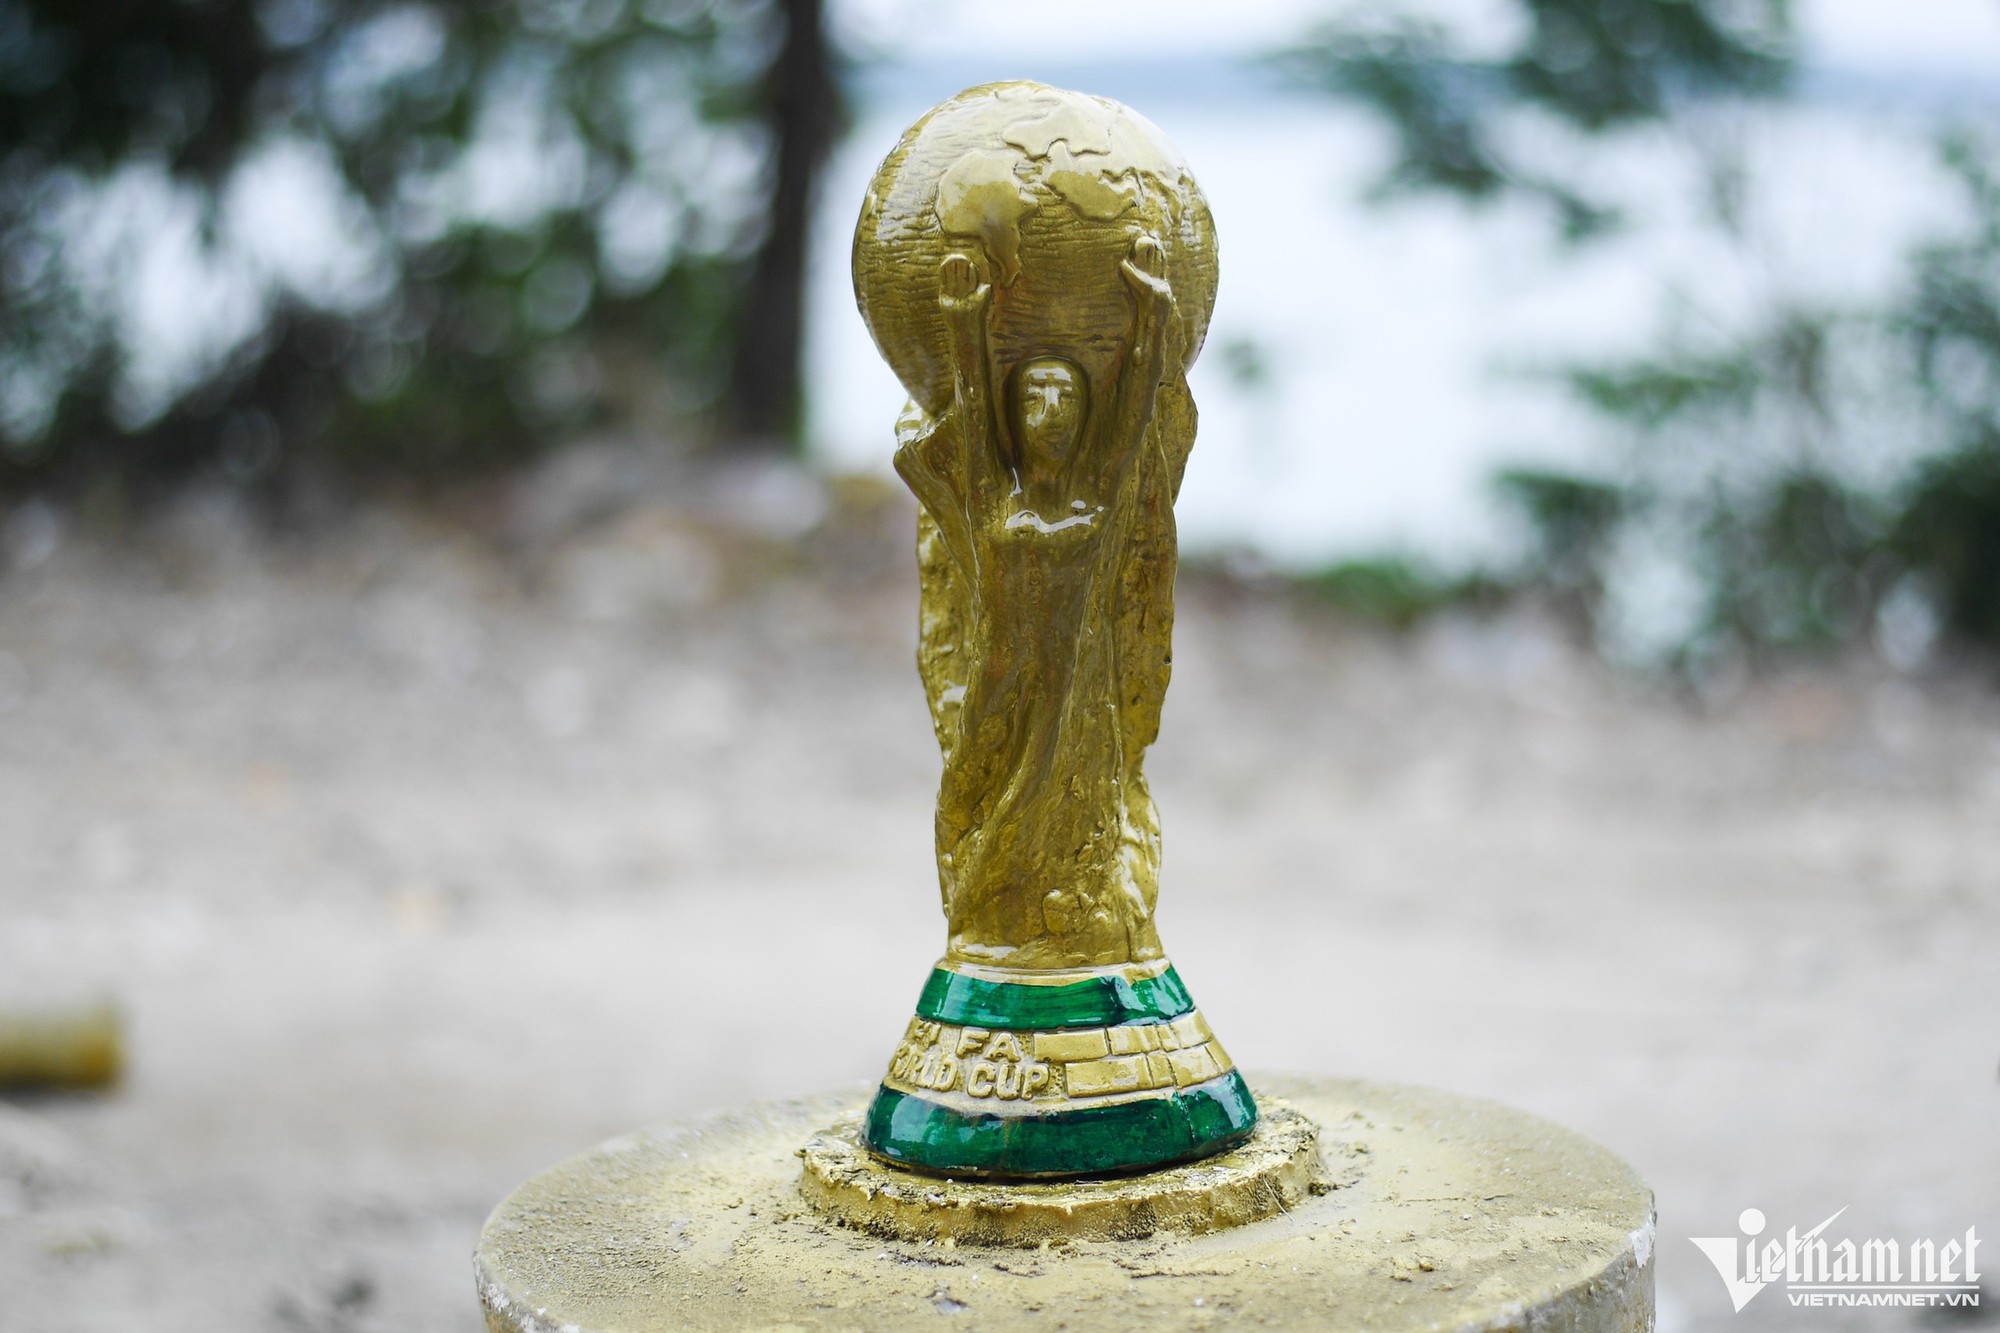 &quot;Cup vàng thế giới&quot; Qatar 2022 giá từ 70.000 đồng xuất hiện ở Hà Nội  - Ảnh 6.